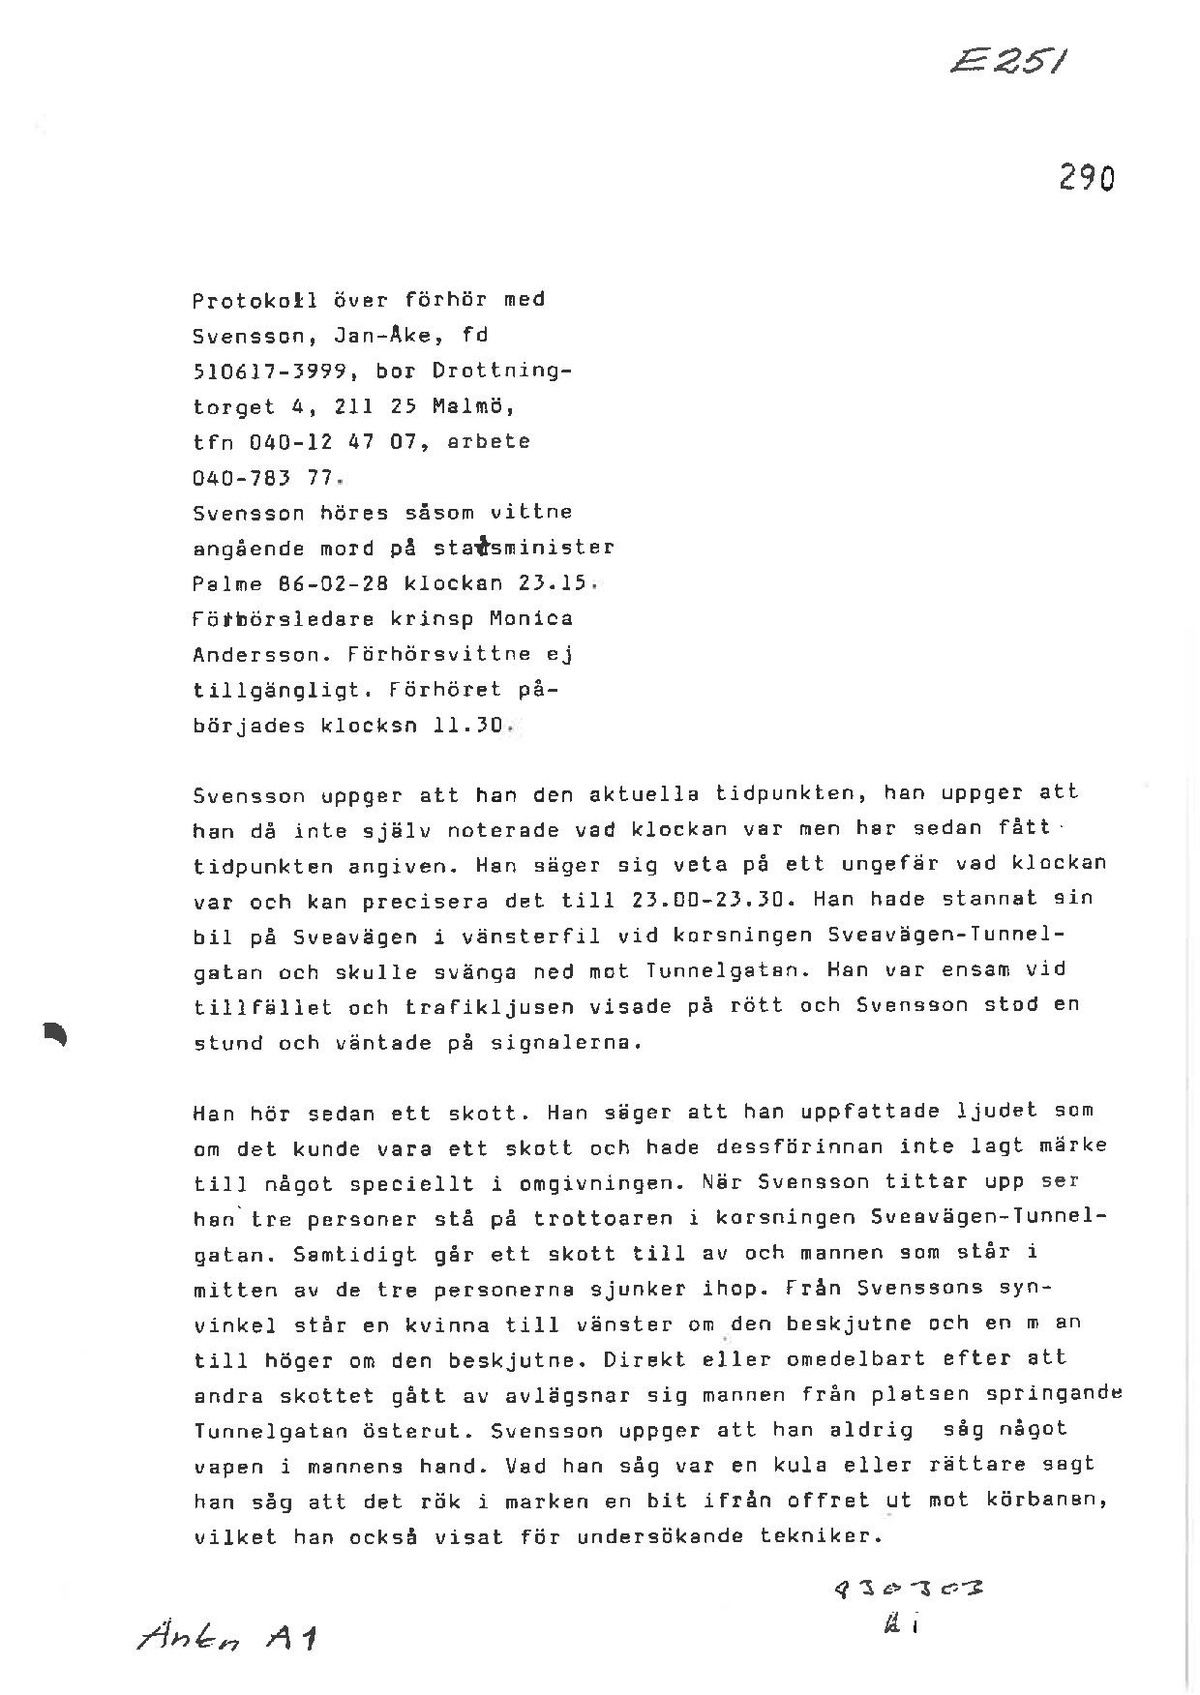 Pol-1986-03-01 E251-00 VITTNESFÖRHÖR-Jan-Åke-Svensson.pdf